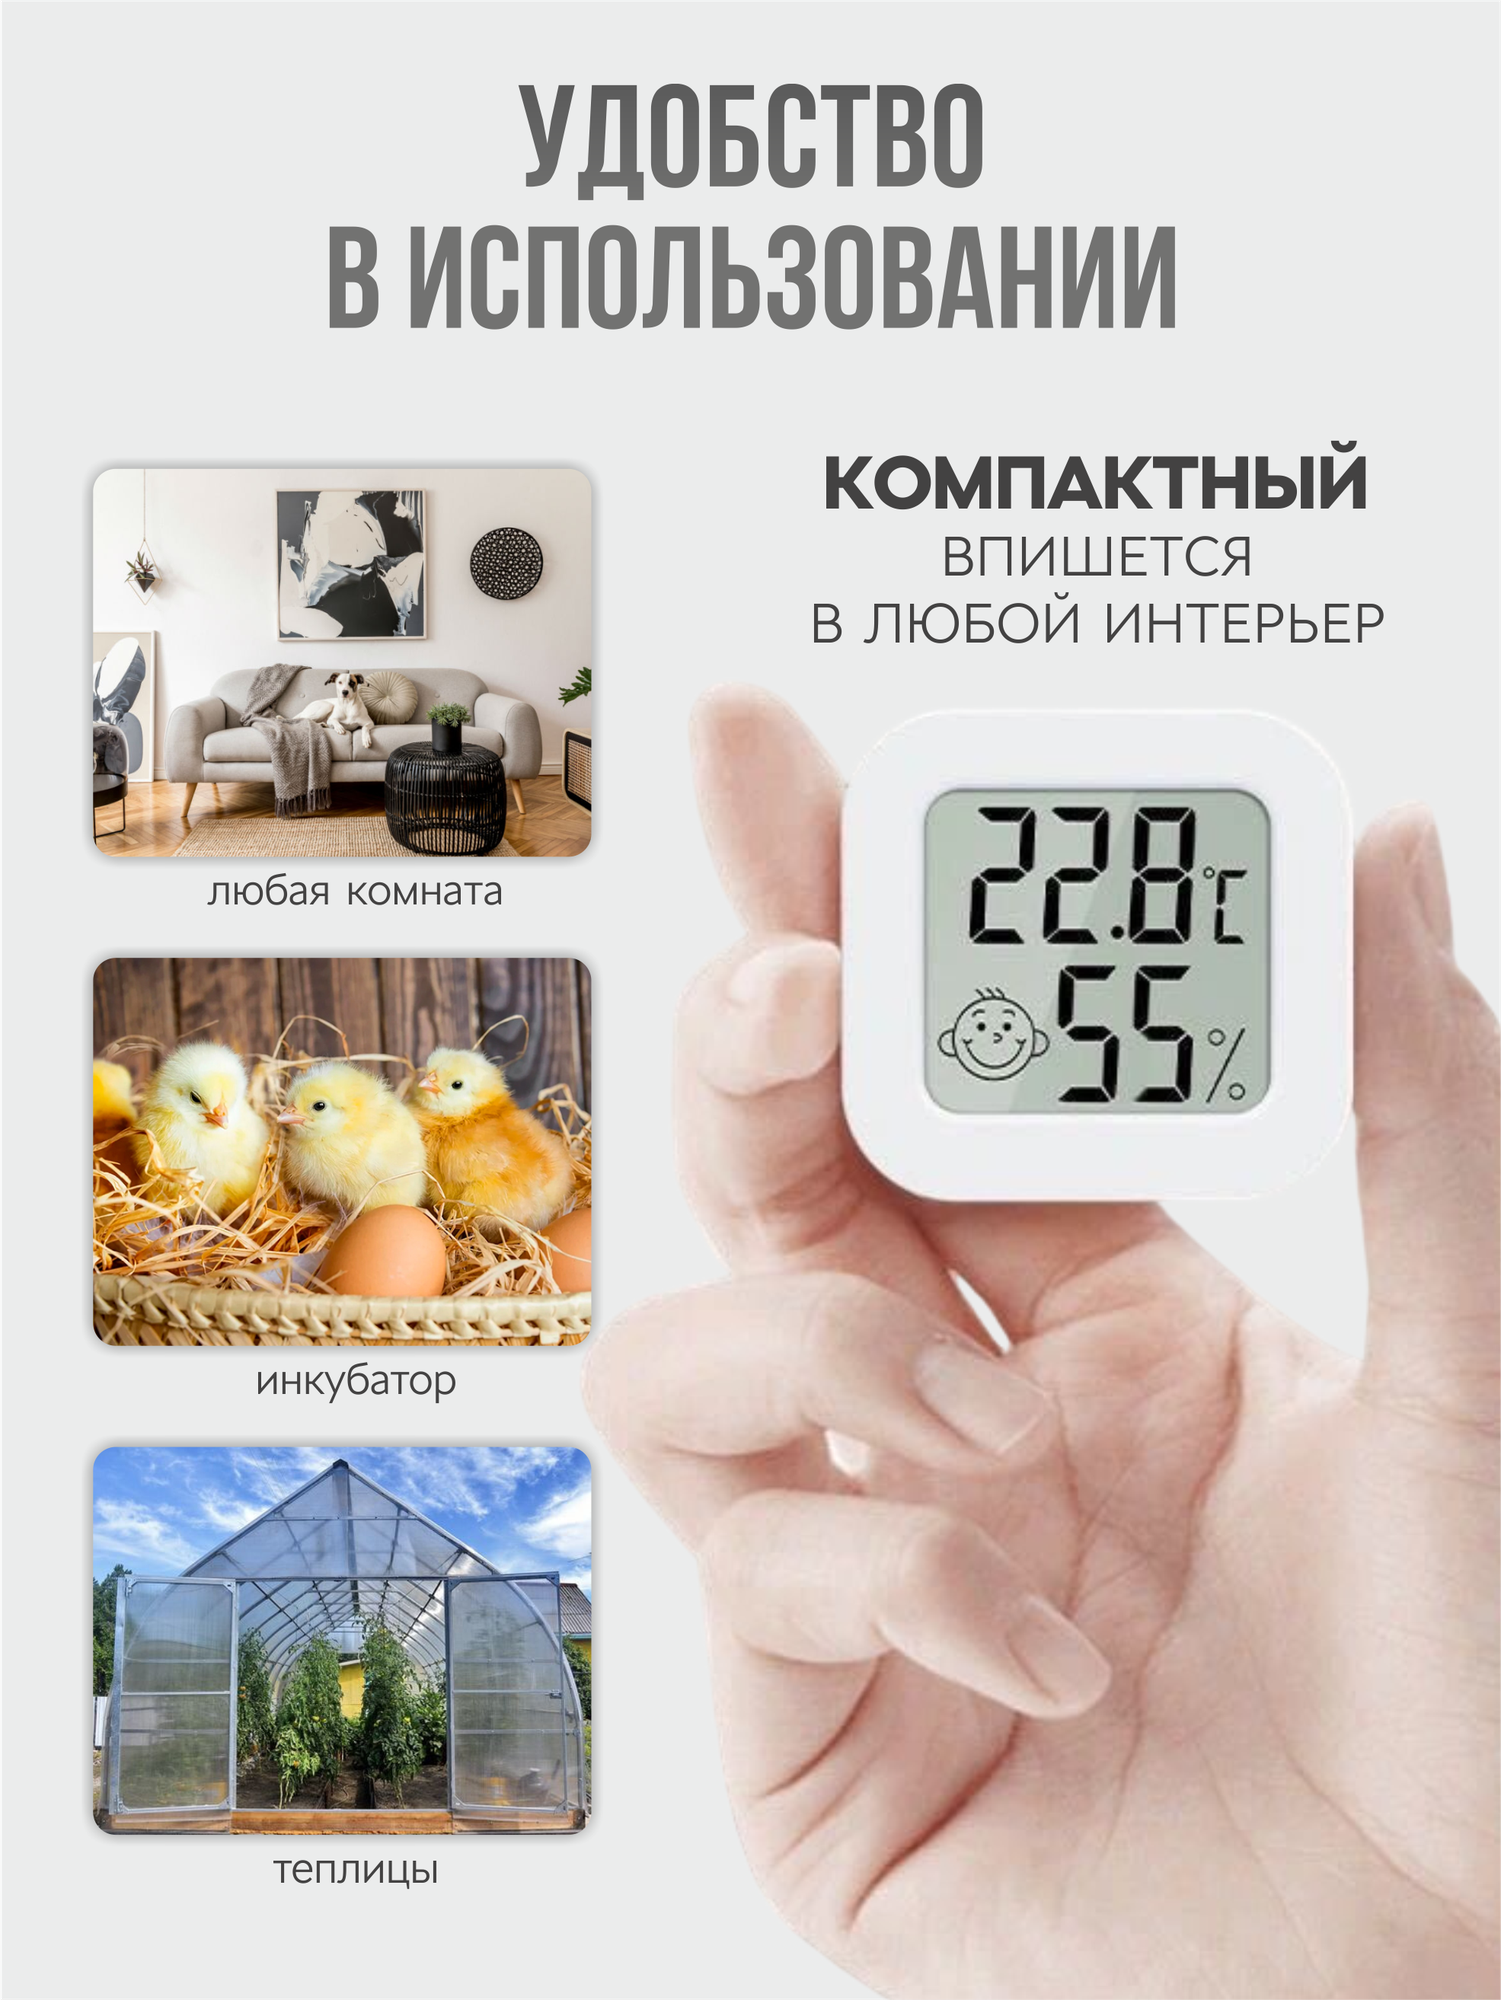 Термометр гигрометр VKS-60, термогигрометр, домашняя метеостанция, измеритель влажности и температуры